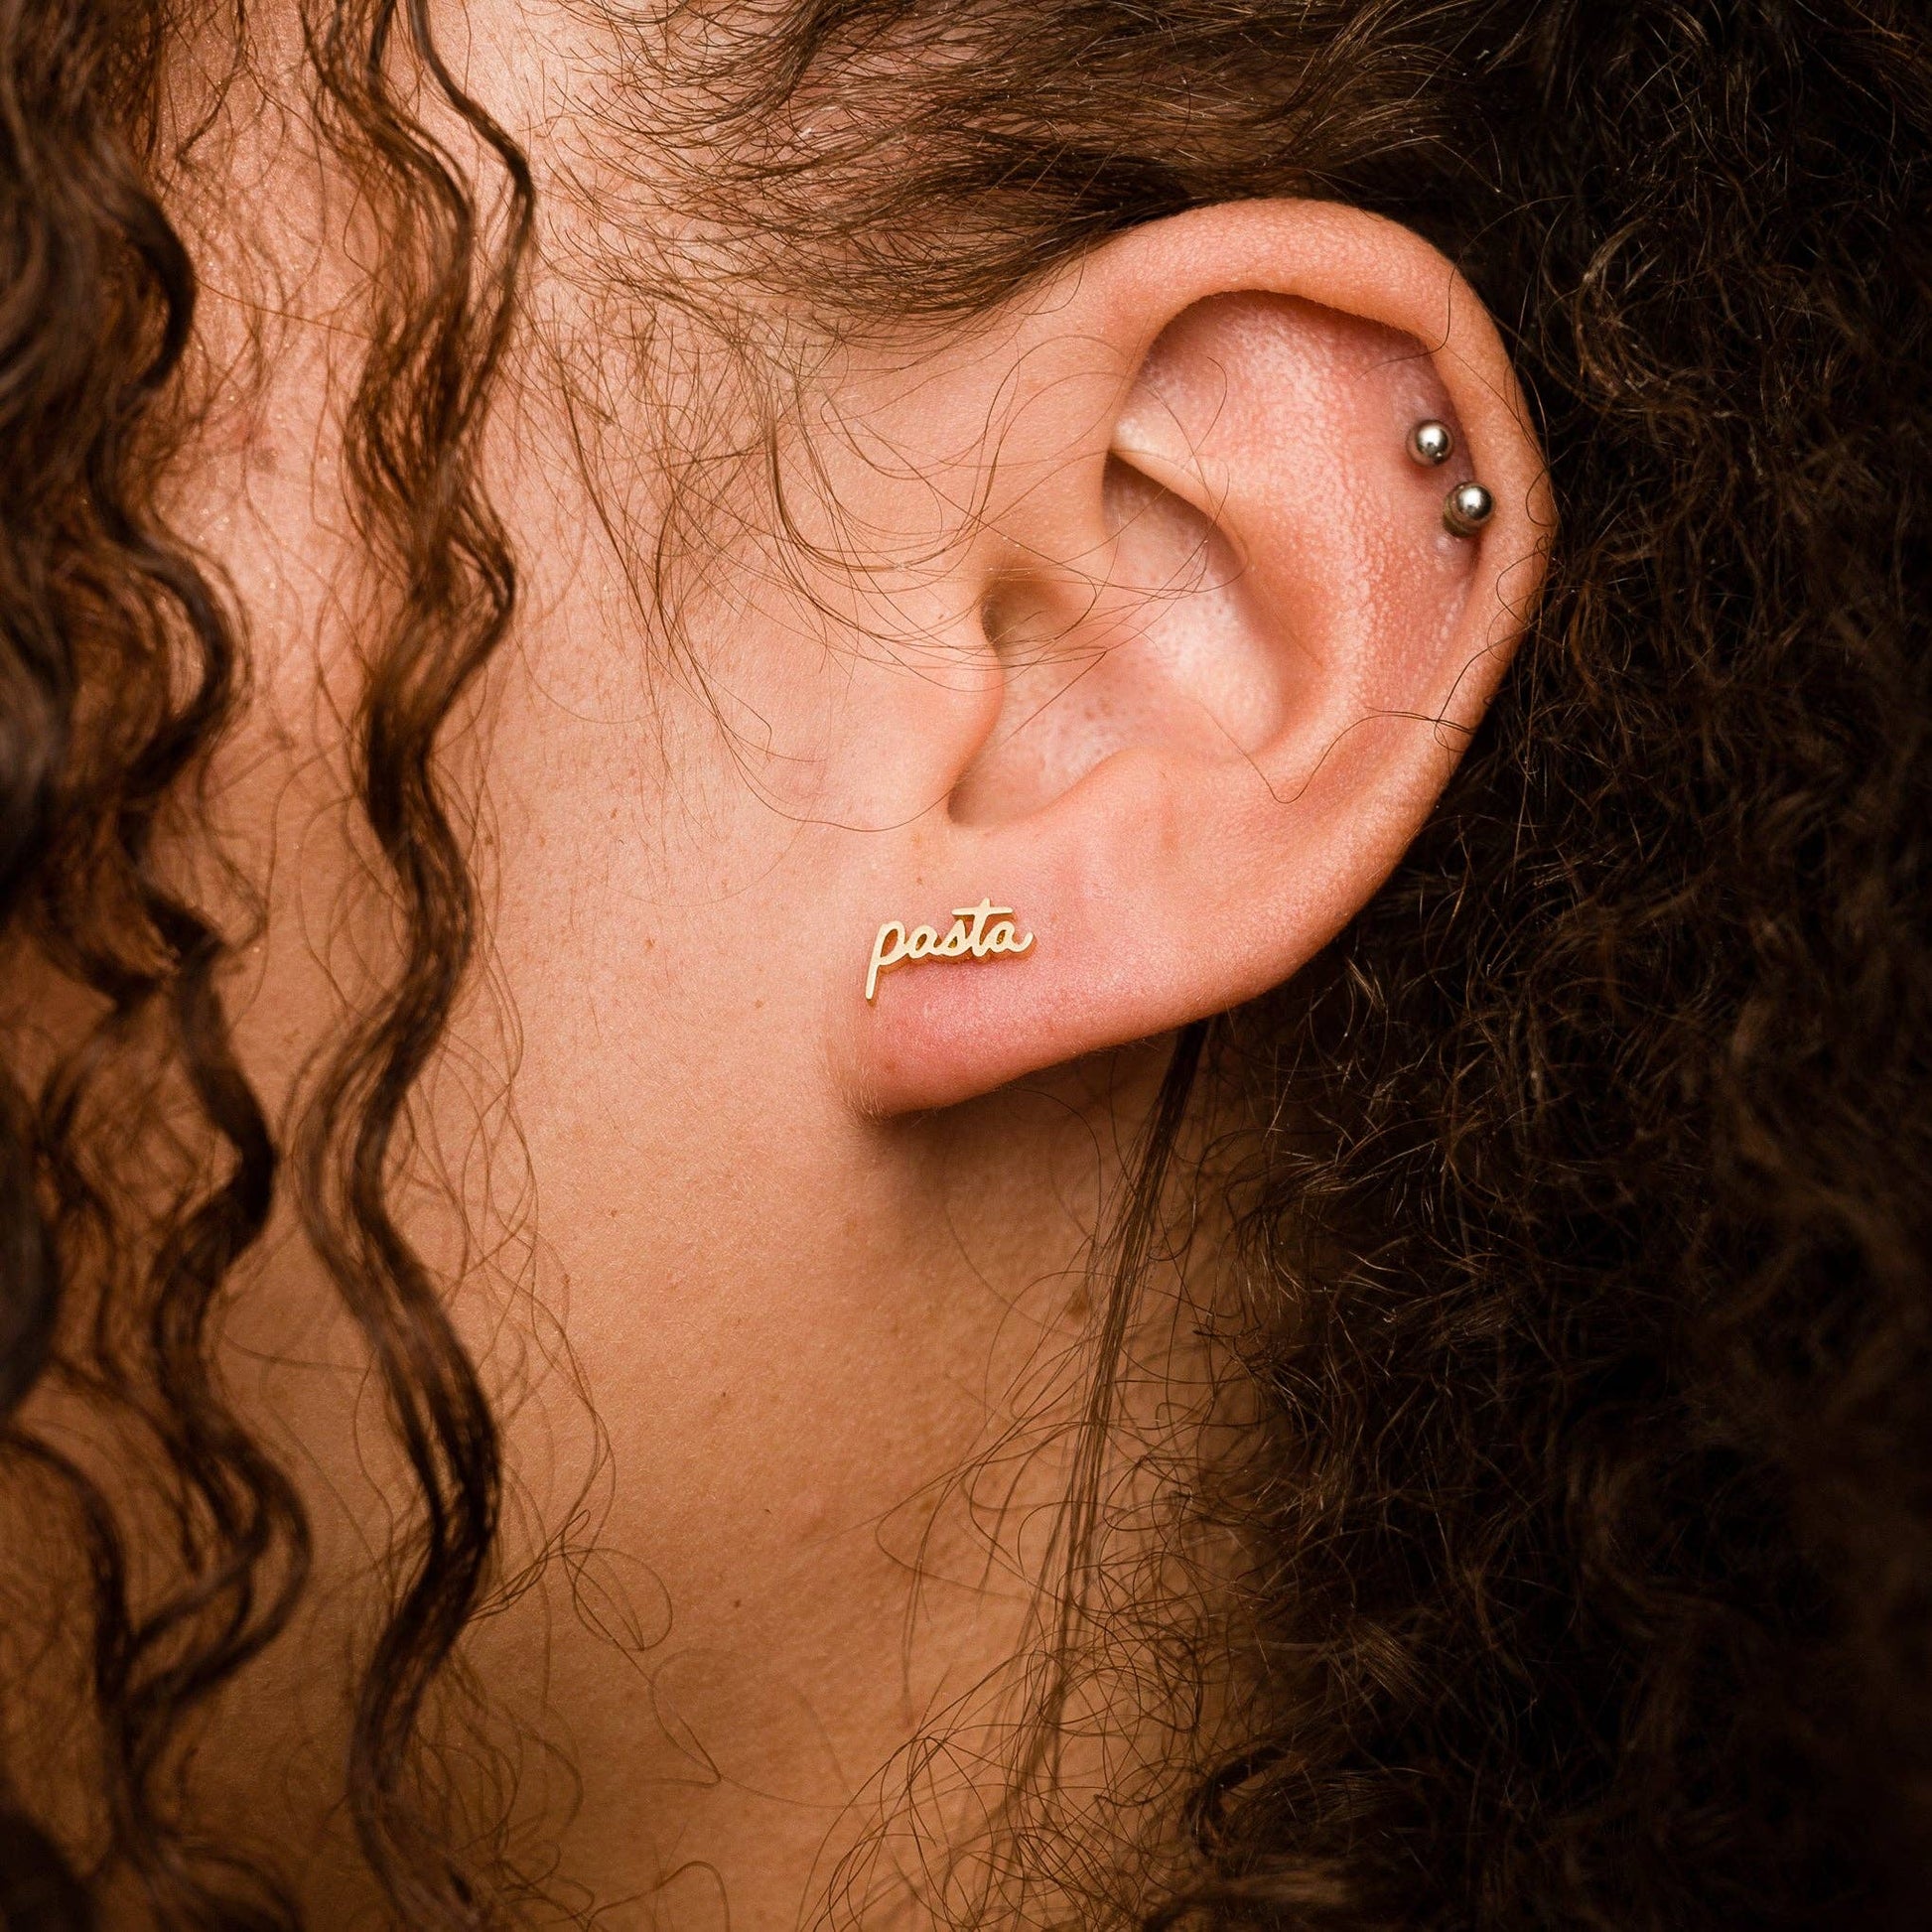 Single 14k gold plated stud earring -- reads "pasta" in handwritten script. Shown on ear for scale 